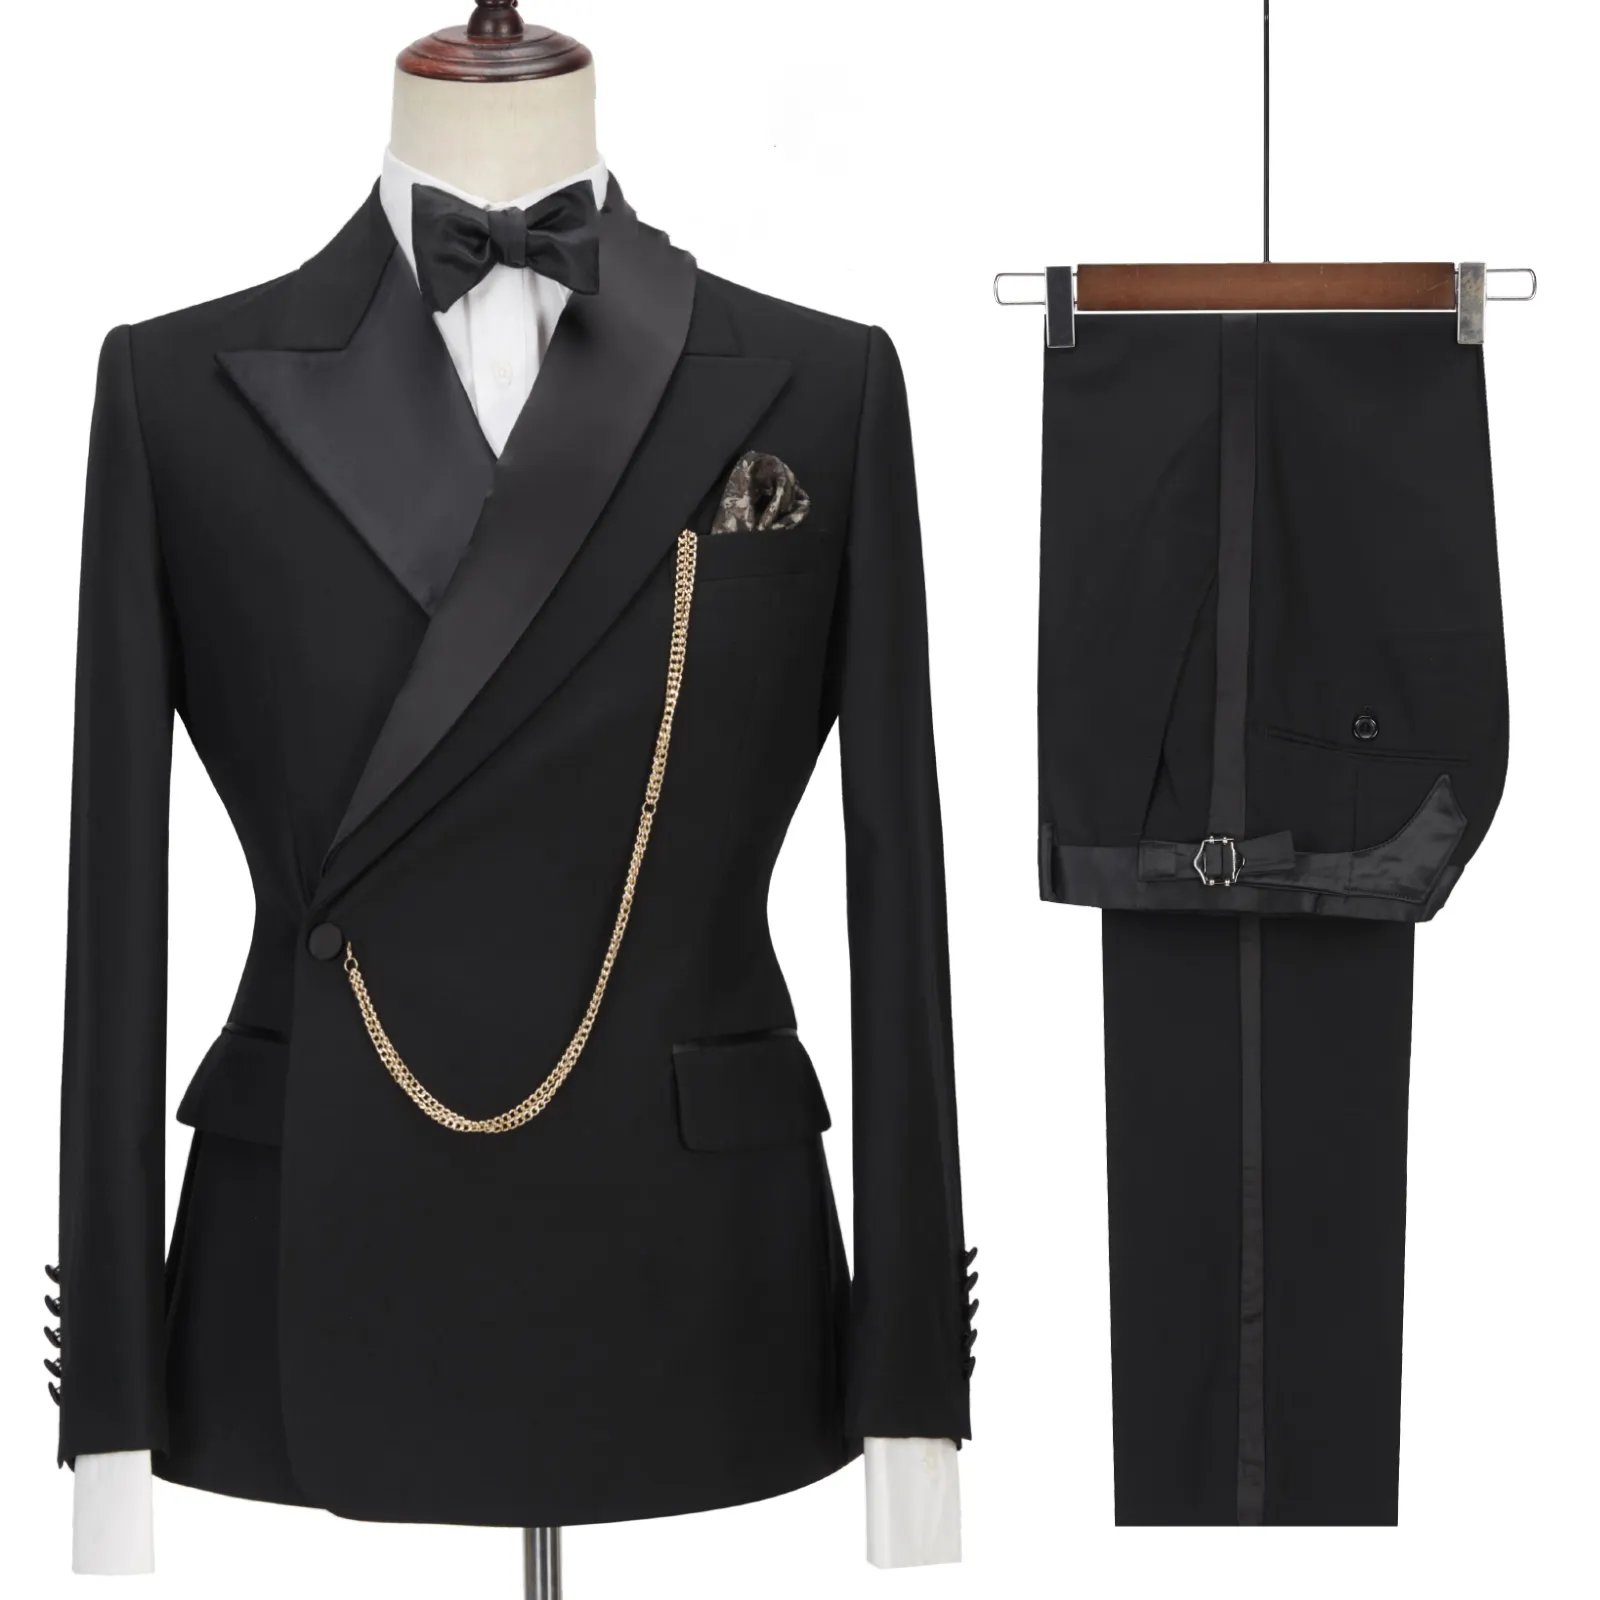 Guangzhou Zhenhao Hot Sale Design Men Suits Tuxedo 2 Pieces Black Color Wedding Party Style